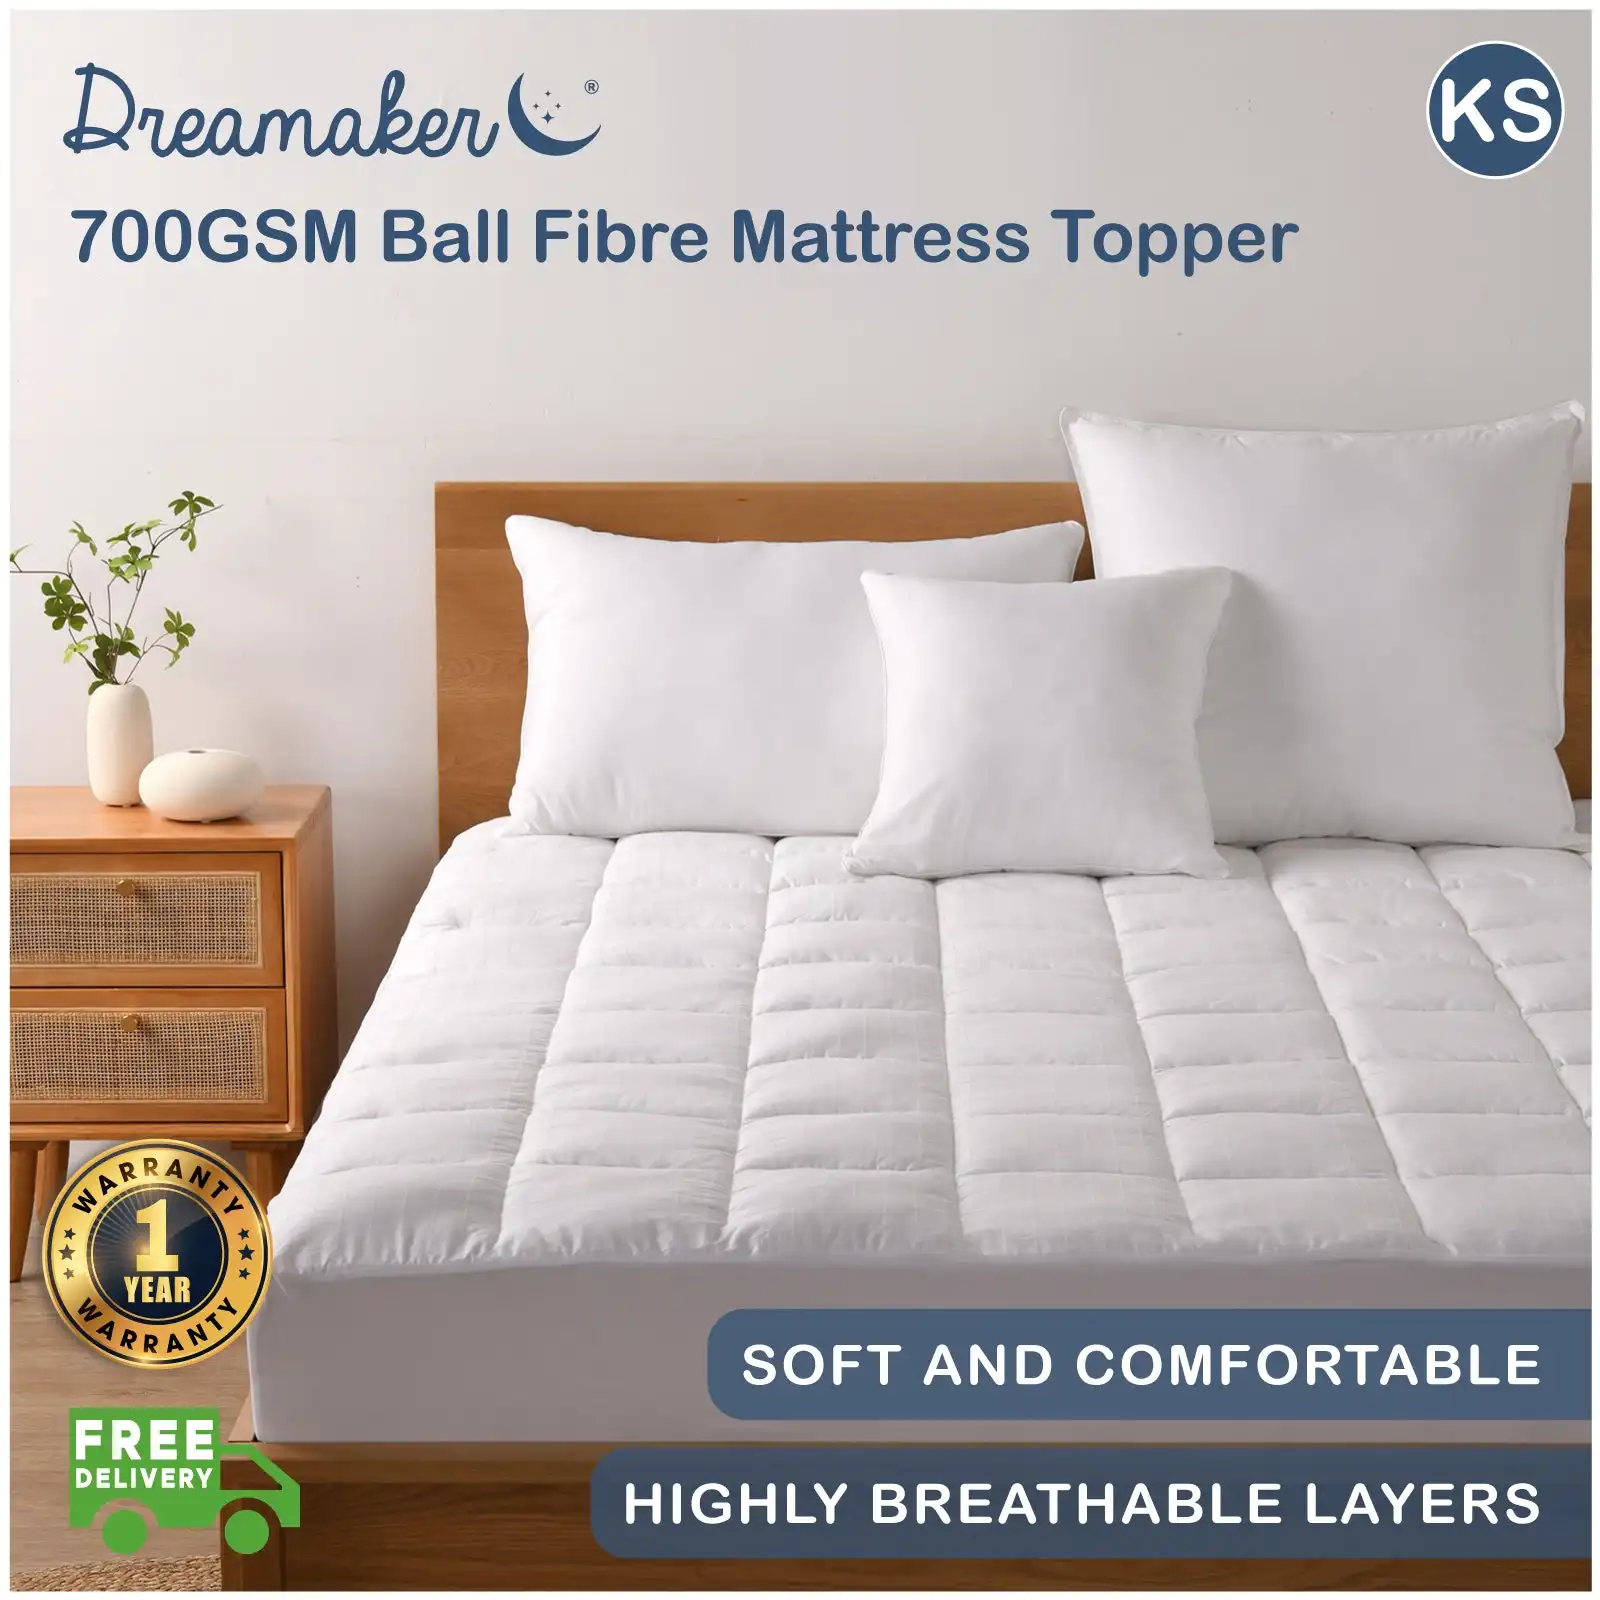 Dreamaker 700GSM Ball Fibre Mattress Topper - King Single Bed